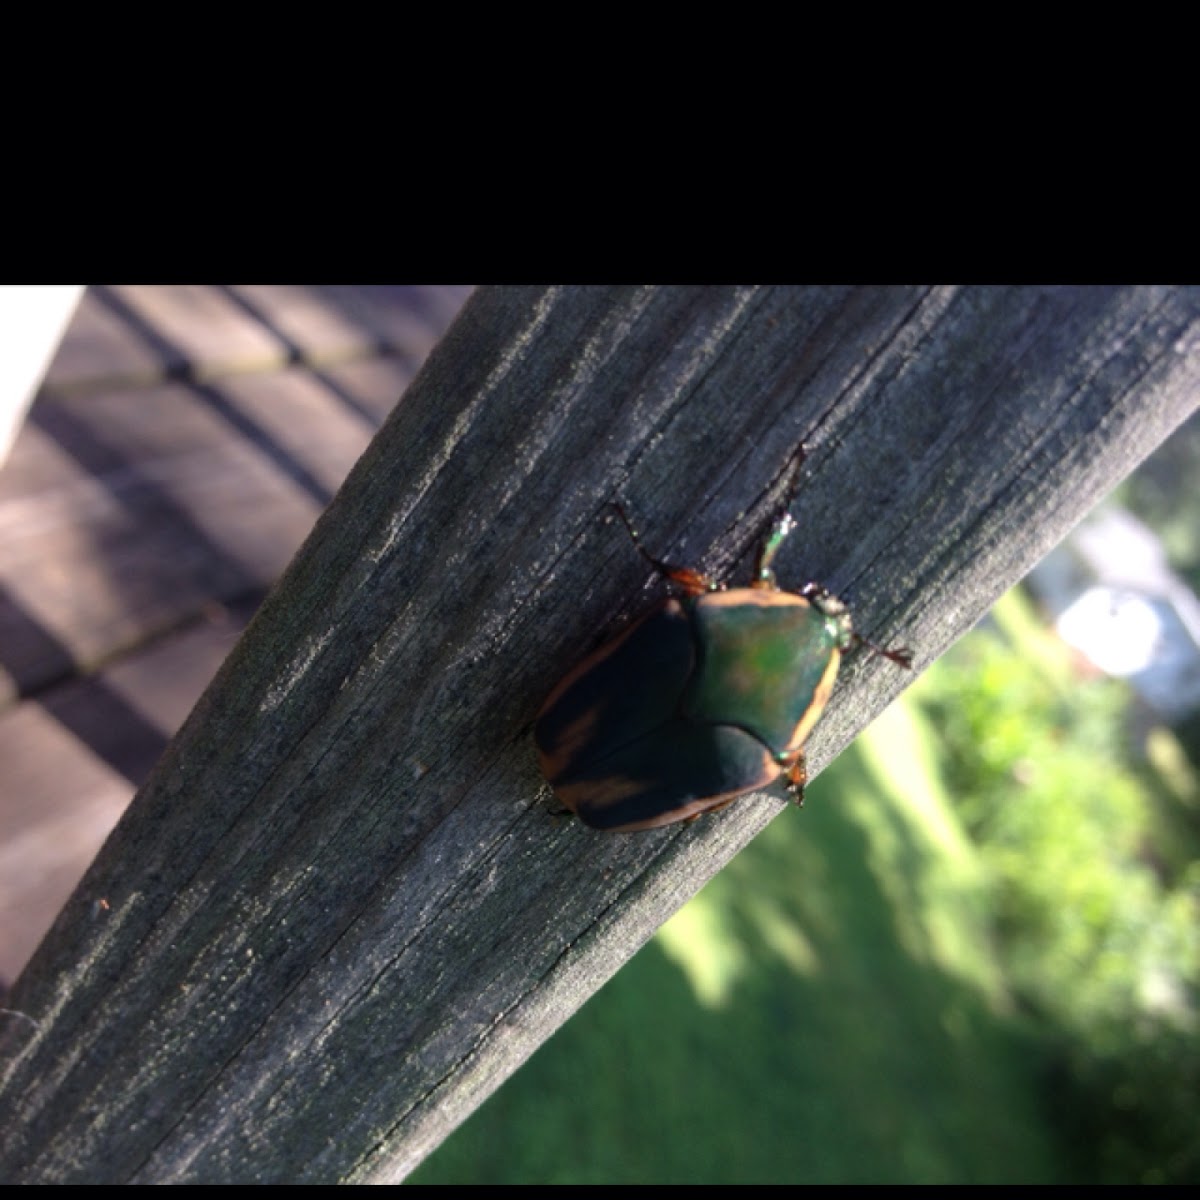 June bug